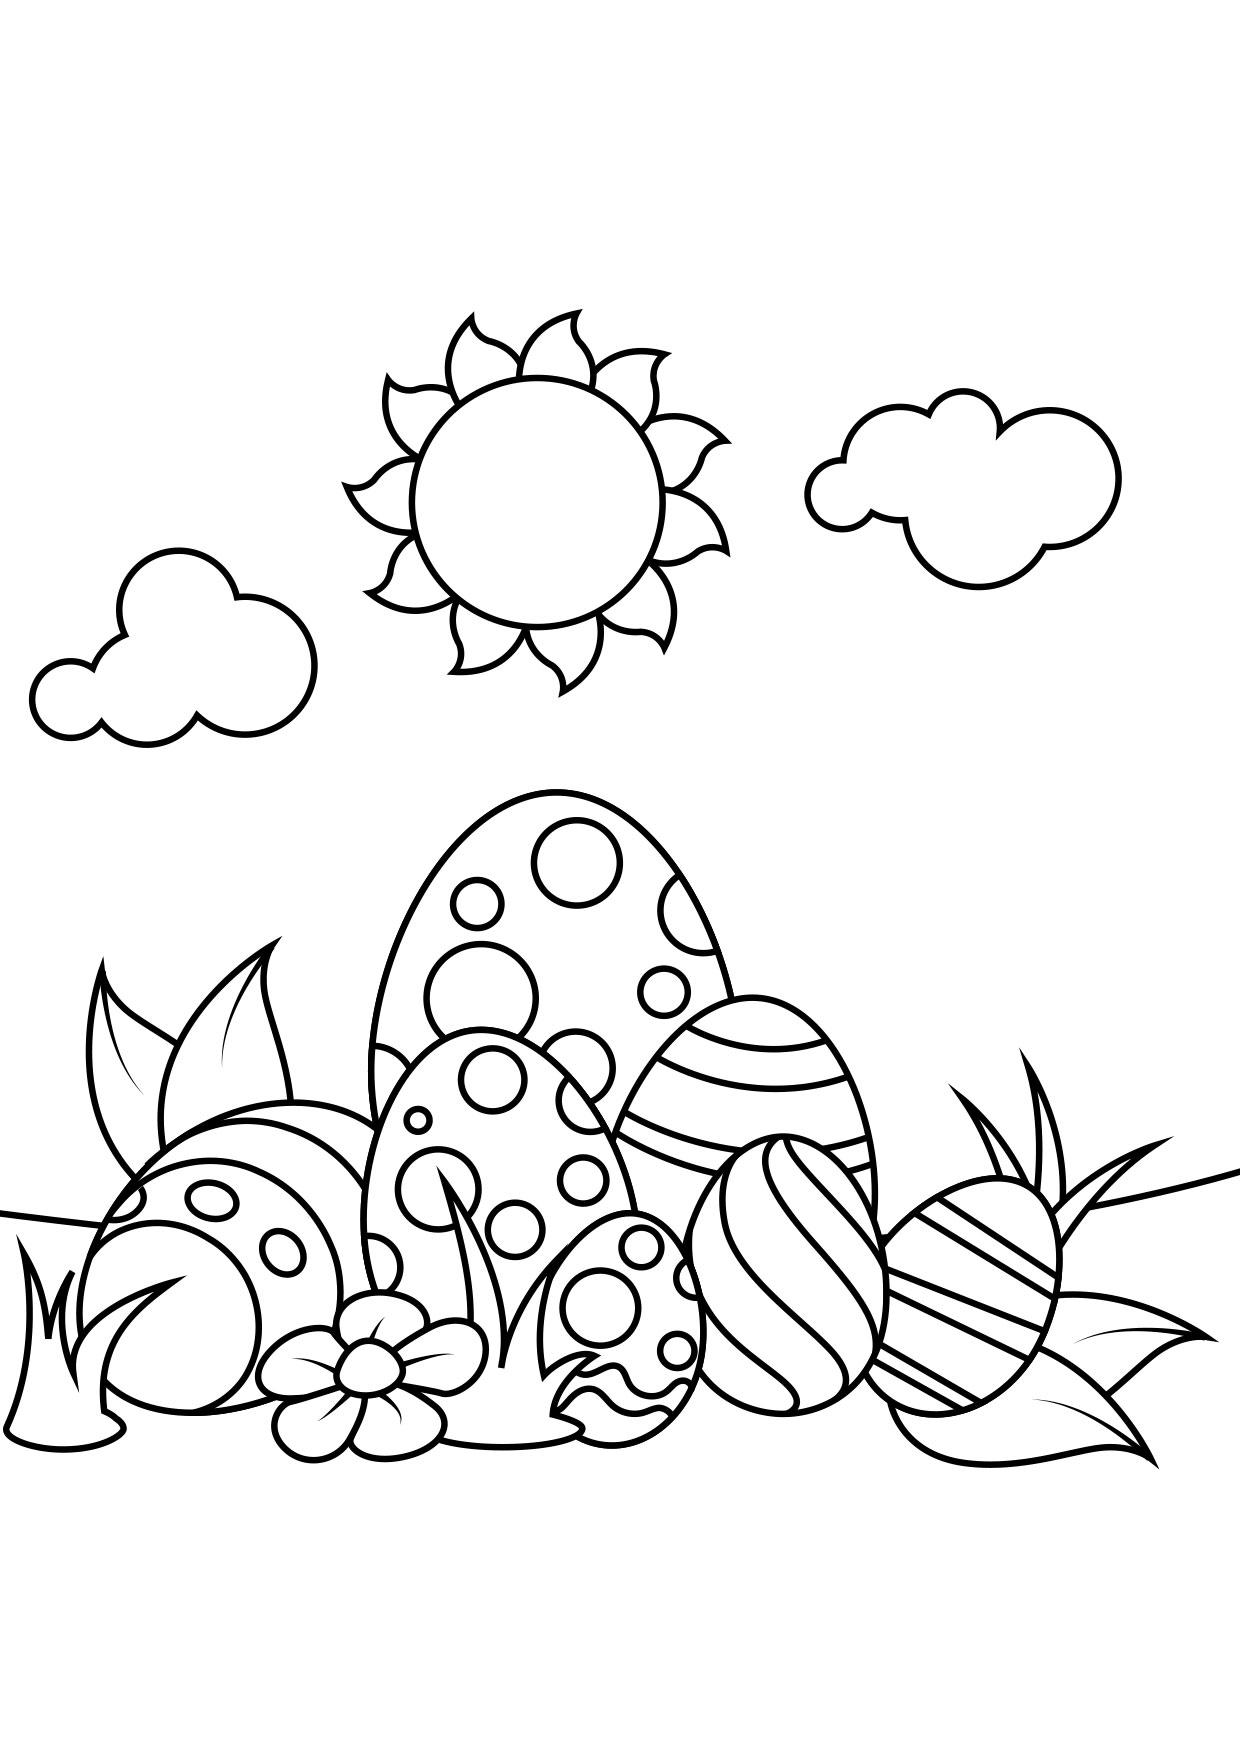 Dibujo para colorear Huevos de pascua bajo el sol